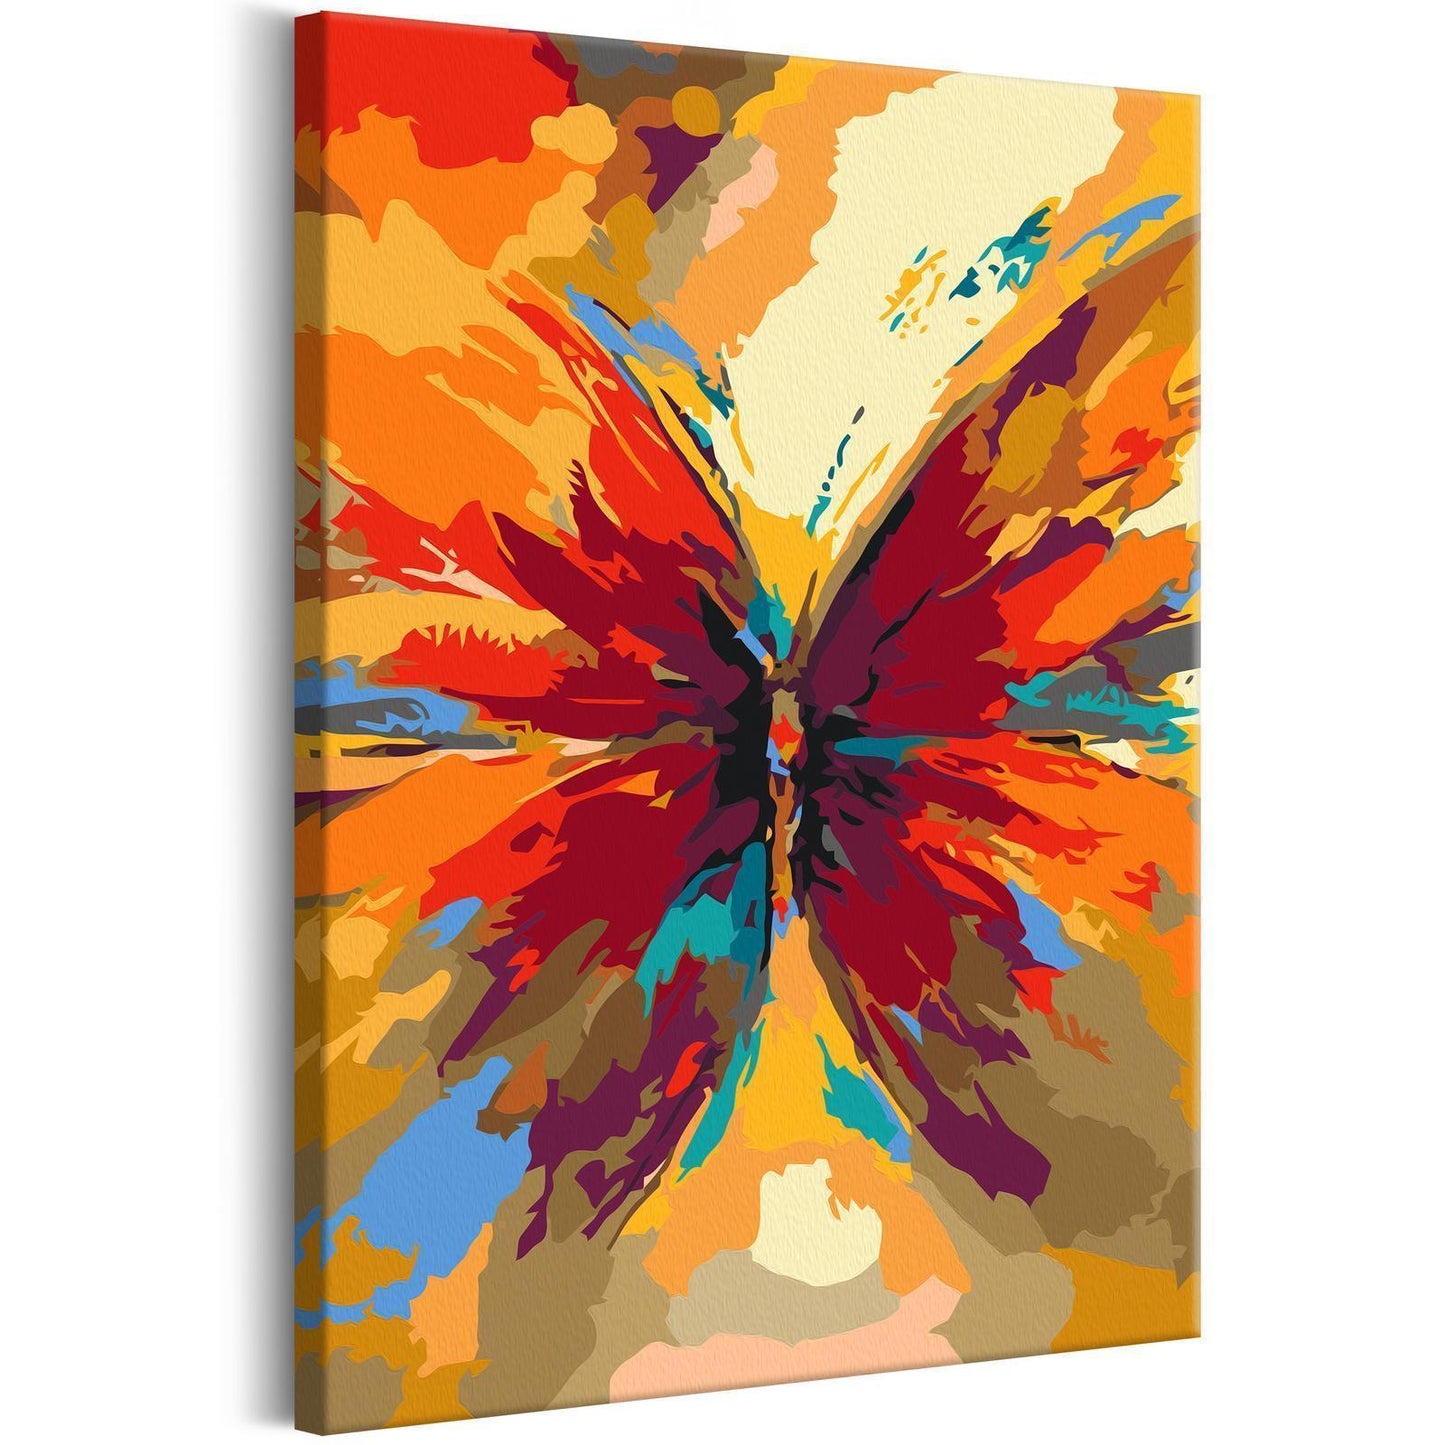 Doe-het-zelf op canvas schilderen - Multicolored Butterfly